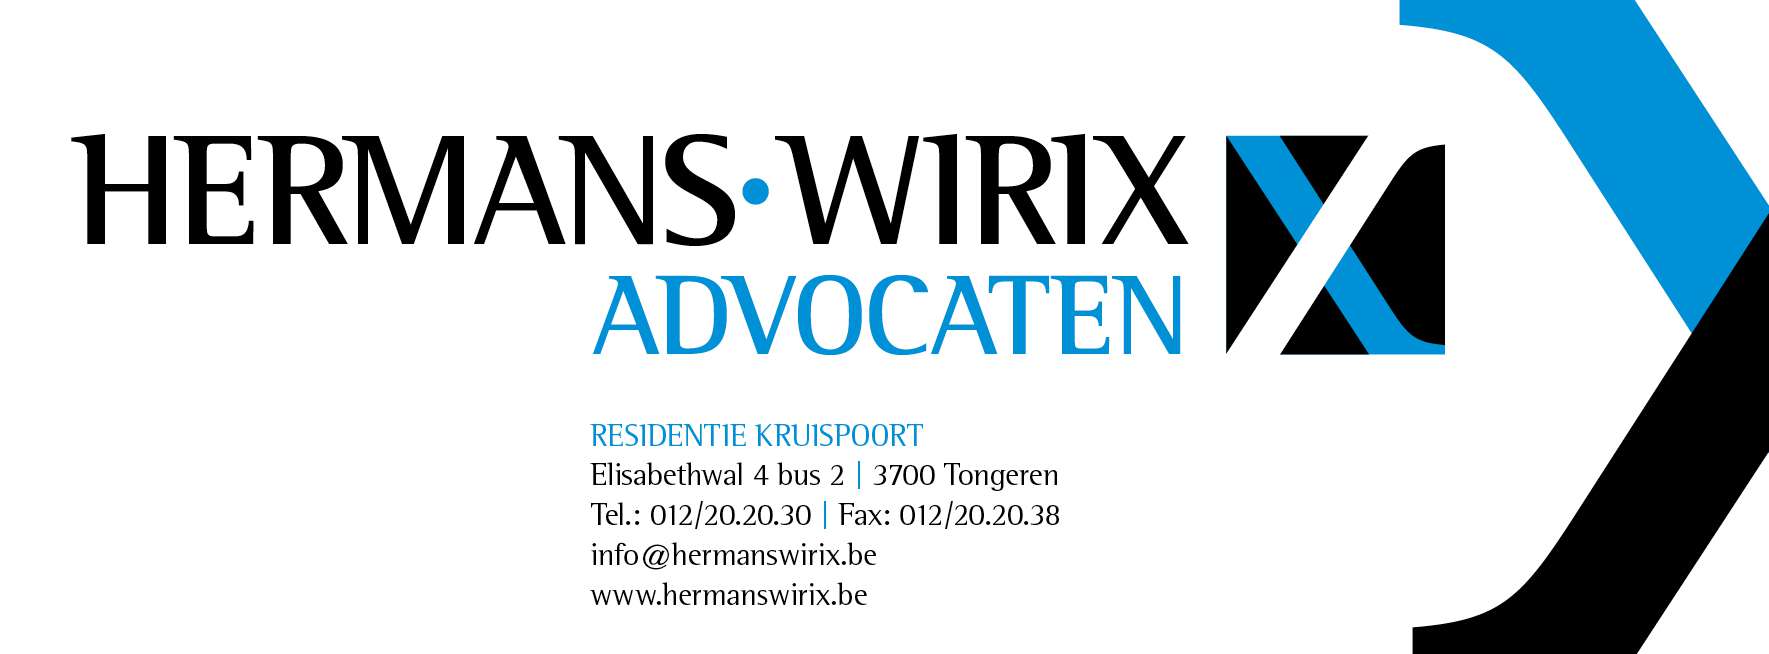 advocaten Riemst Hermans-Wirix advocaten